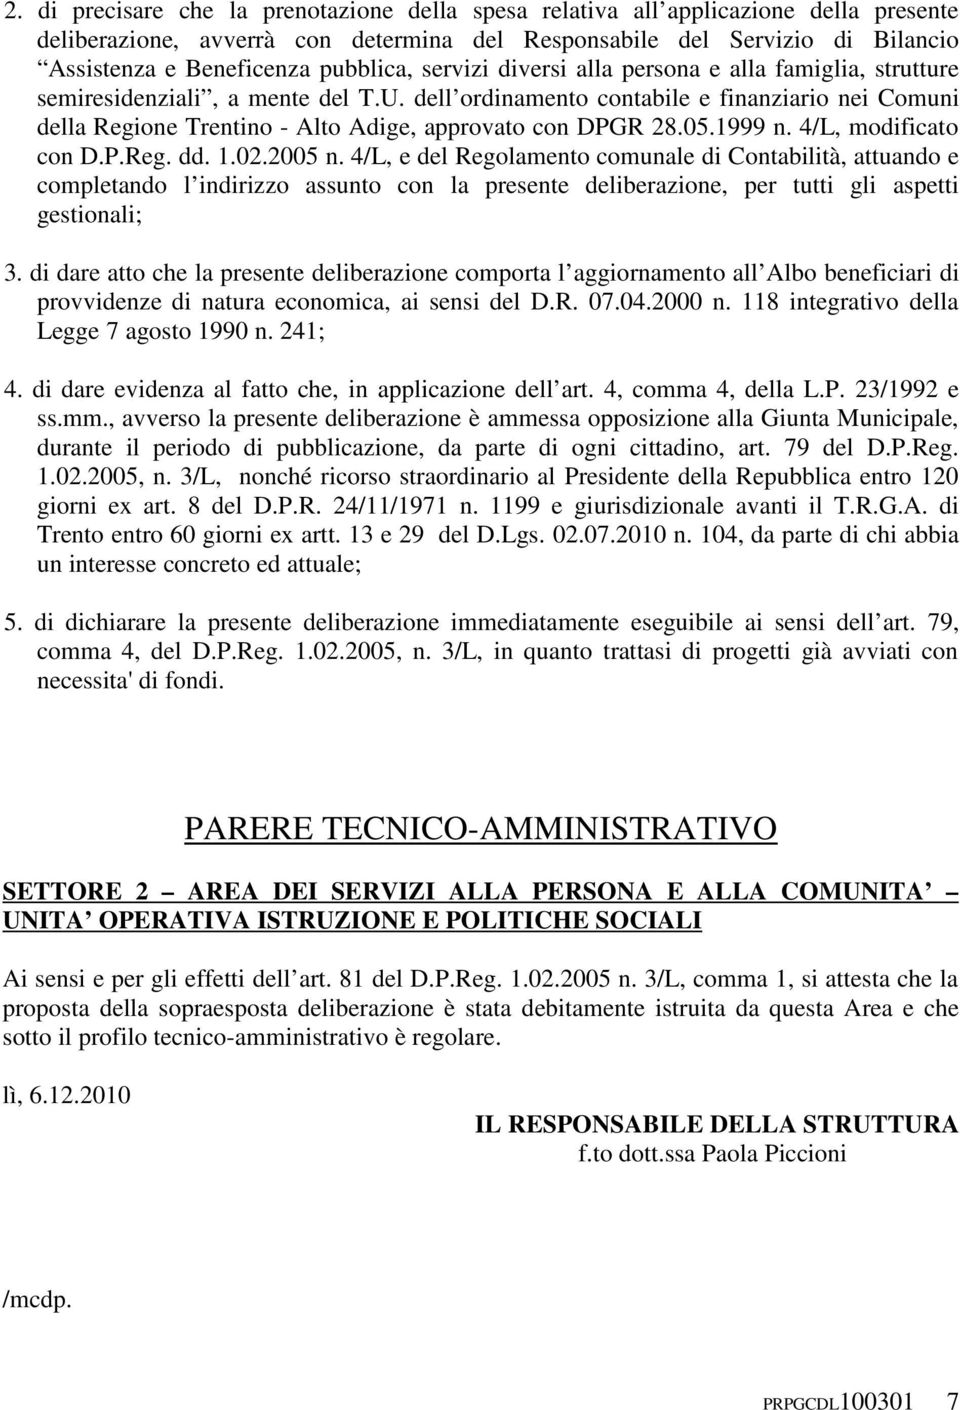 dell ordinamento contabile e finanziario nei Comuni della Regione Trentino - Alto Adige, approvato con DPGR 28.05.1999 n. 4/L, modificato con D.P.Reg. dd. 1.02.2005 n.